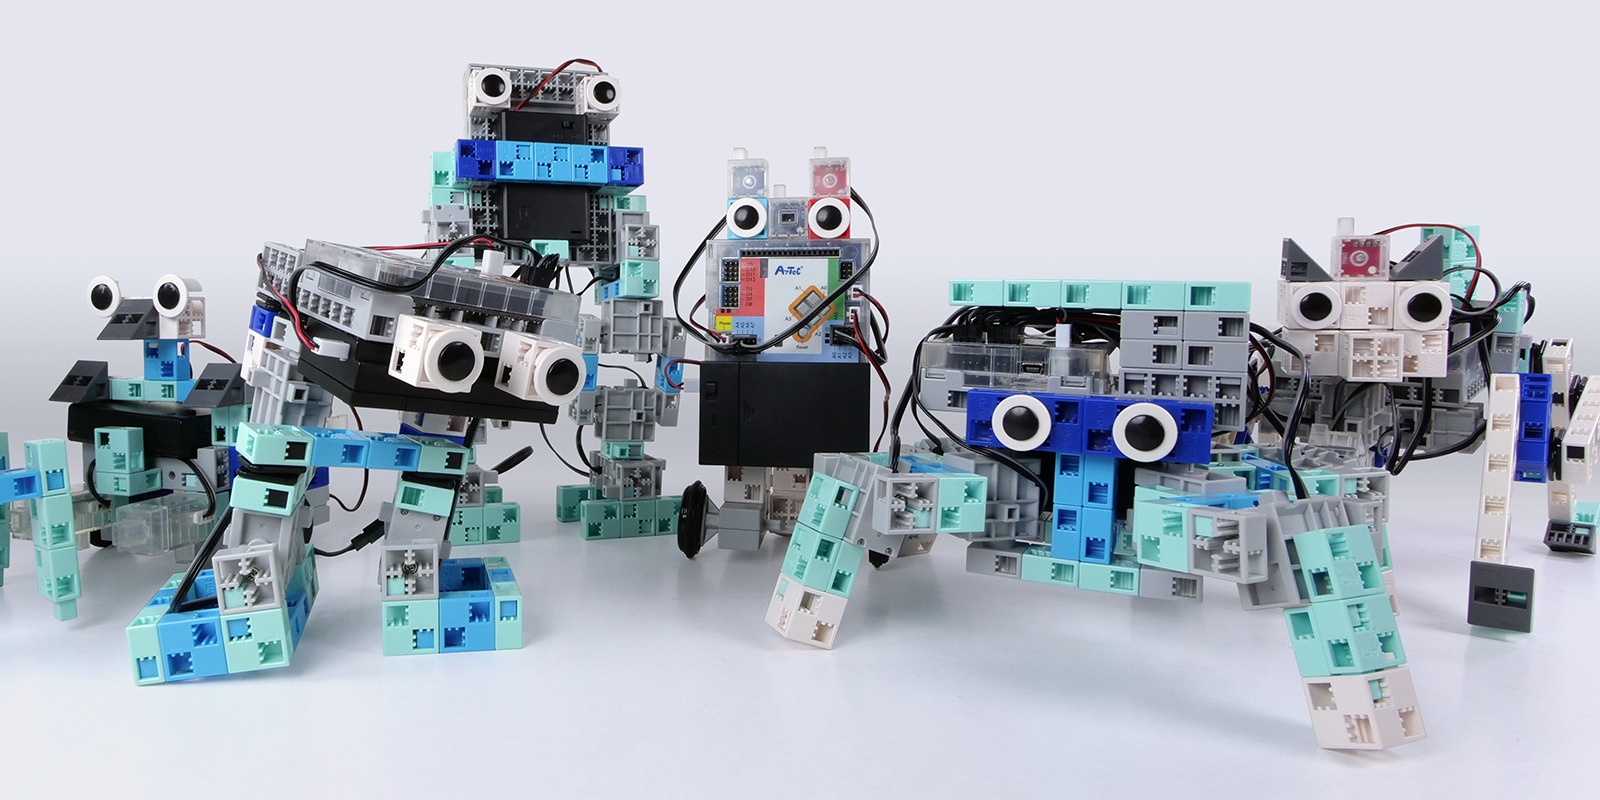 un kit pédagogique scolaire pour créer plusieurs modèles de robots programmables